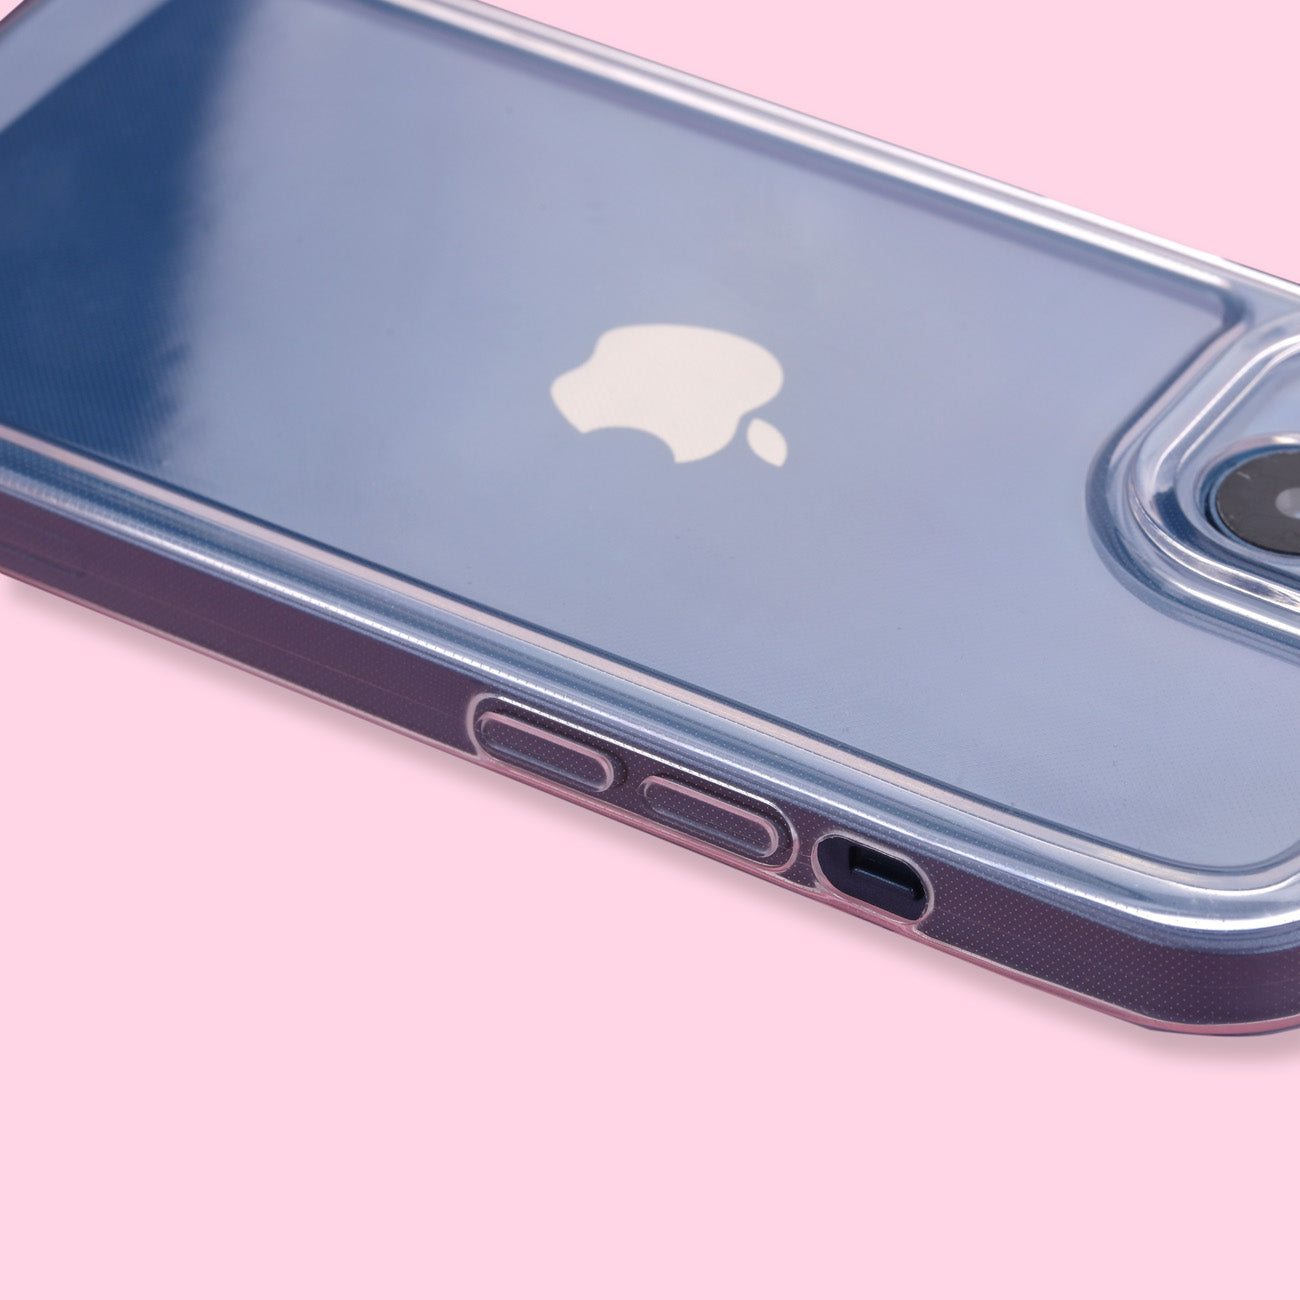 iPhone 13 mini Case - Transparent